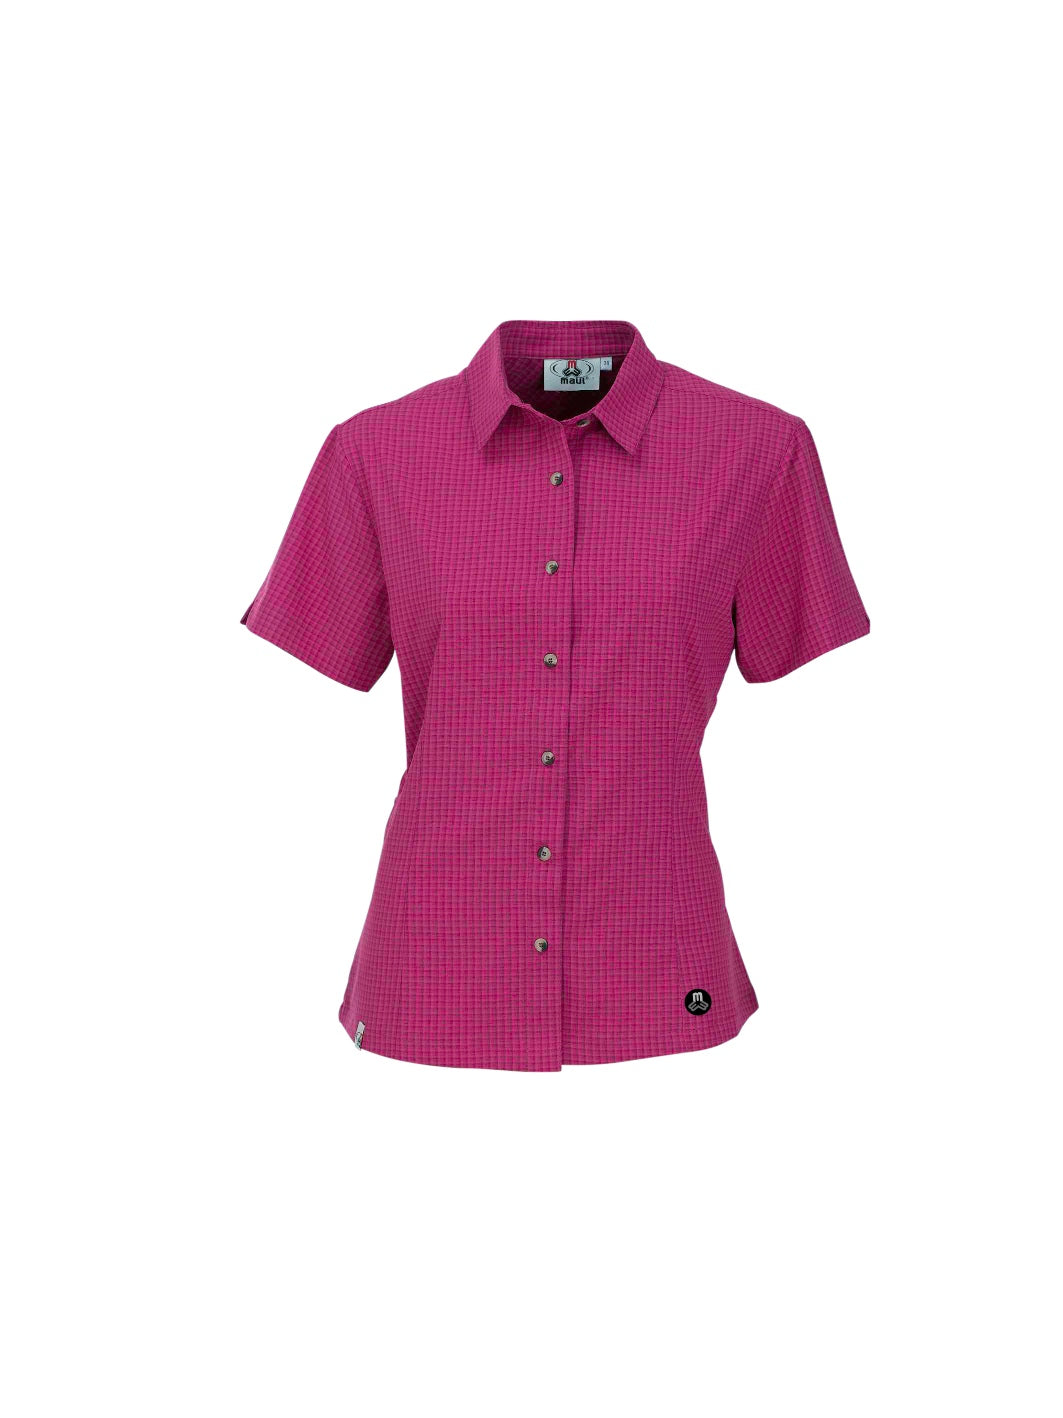 MAUl Sport - Damen Outdoorhemd Halserspitze - 1/2 Bluse Karo - berry  - elastisch